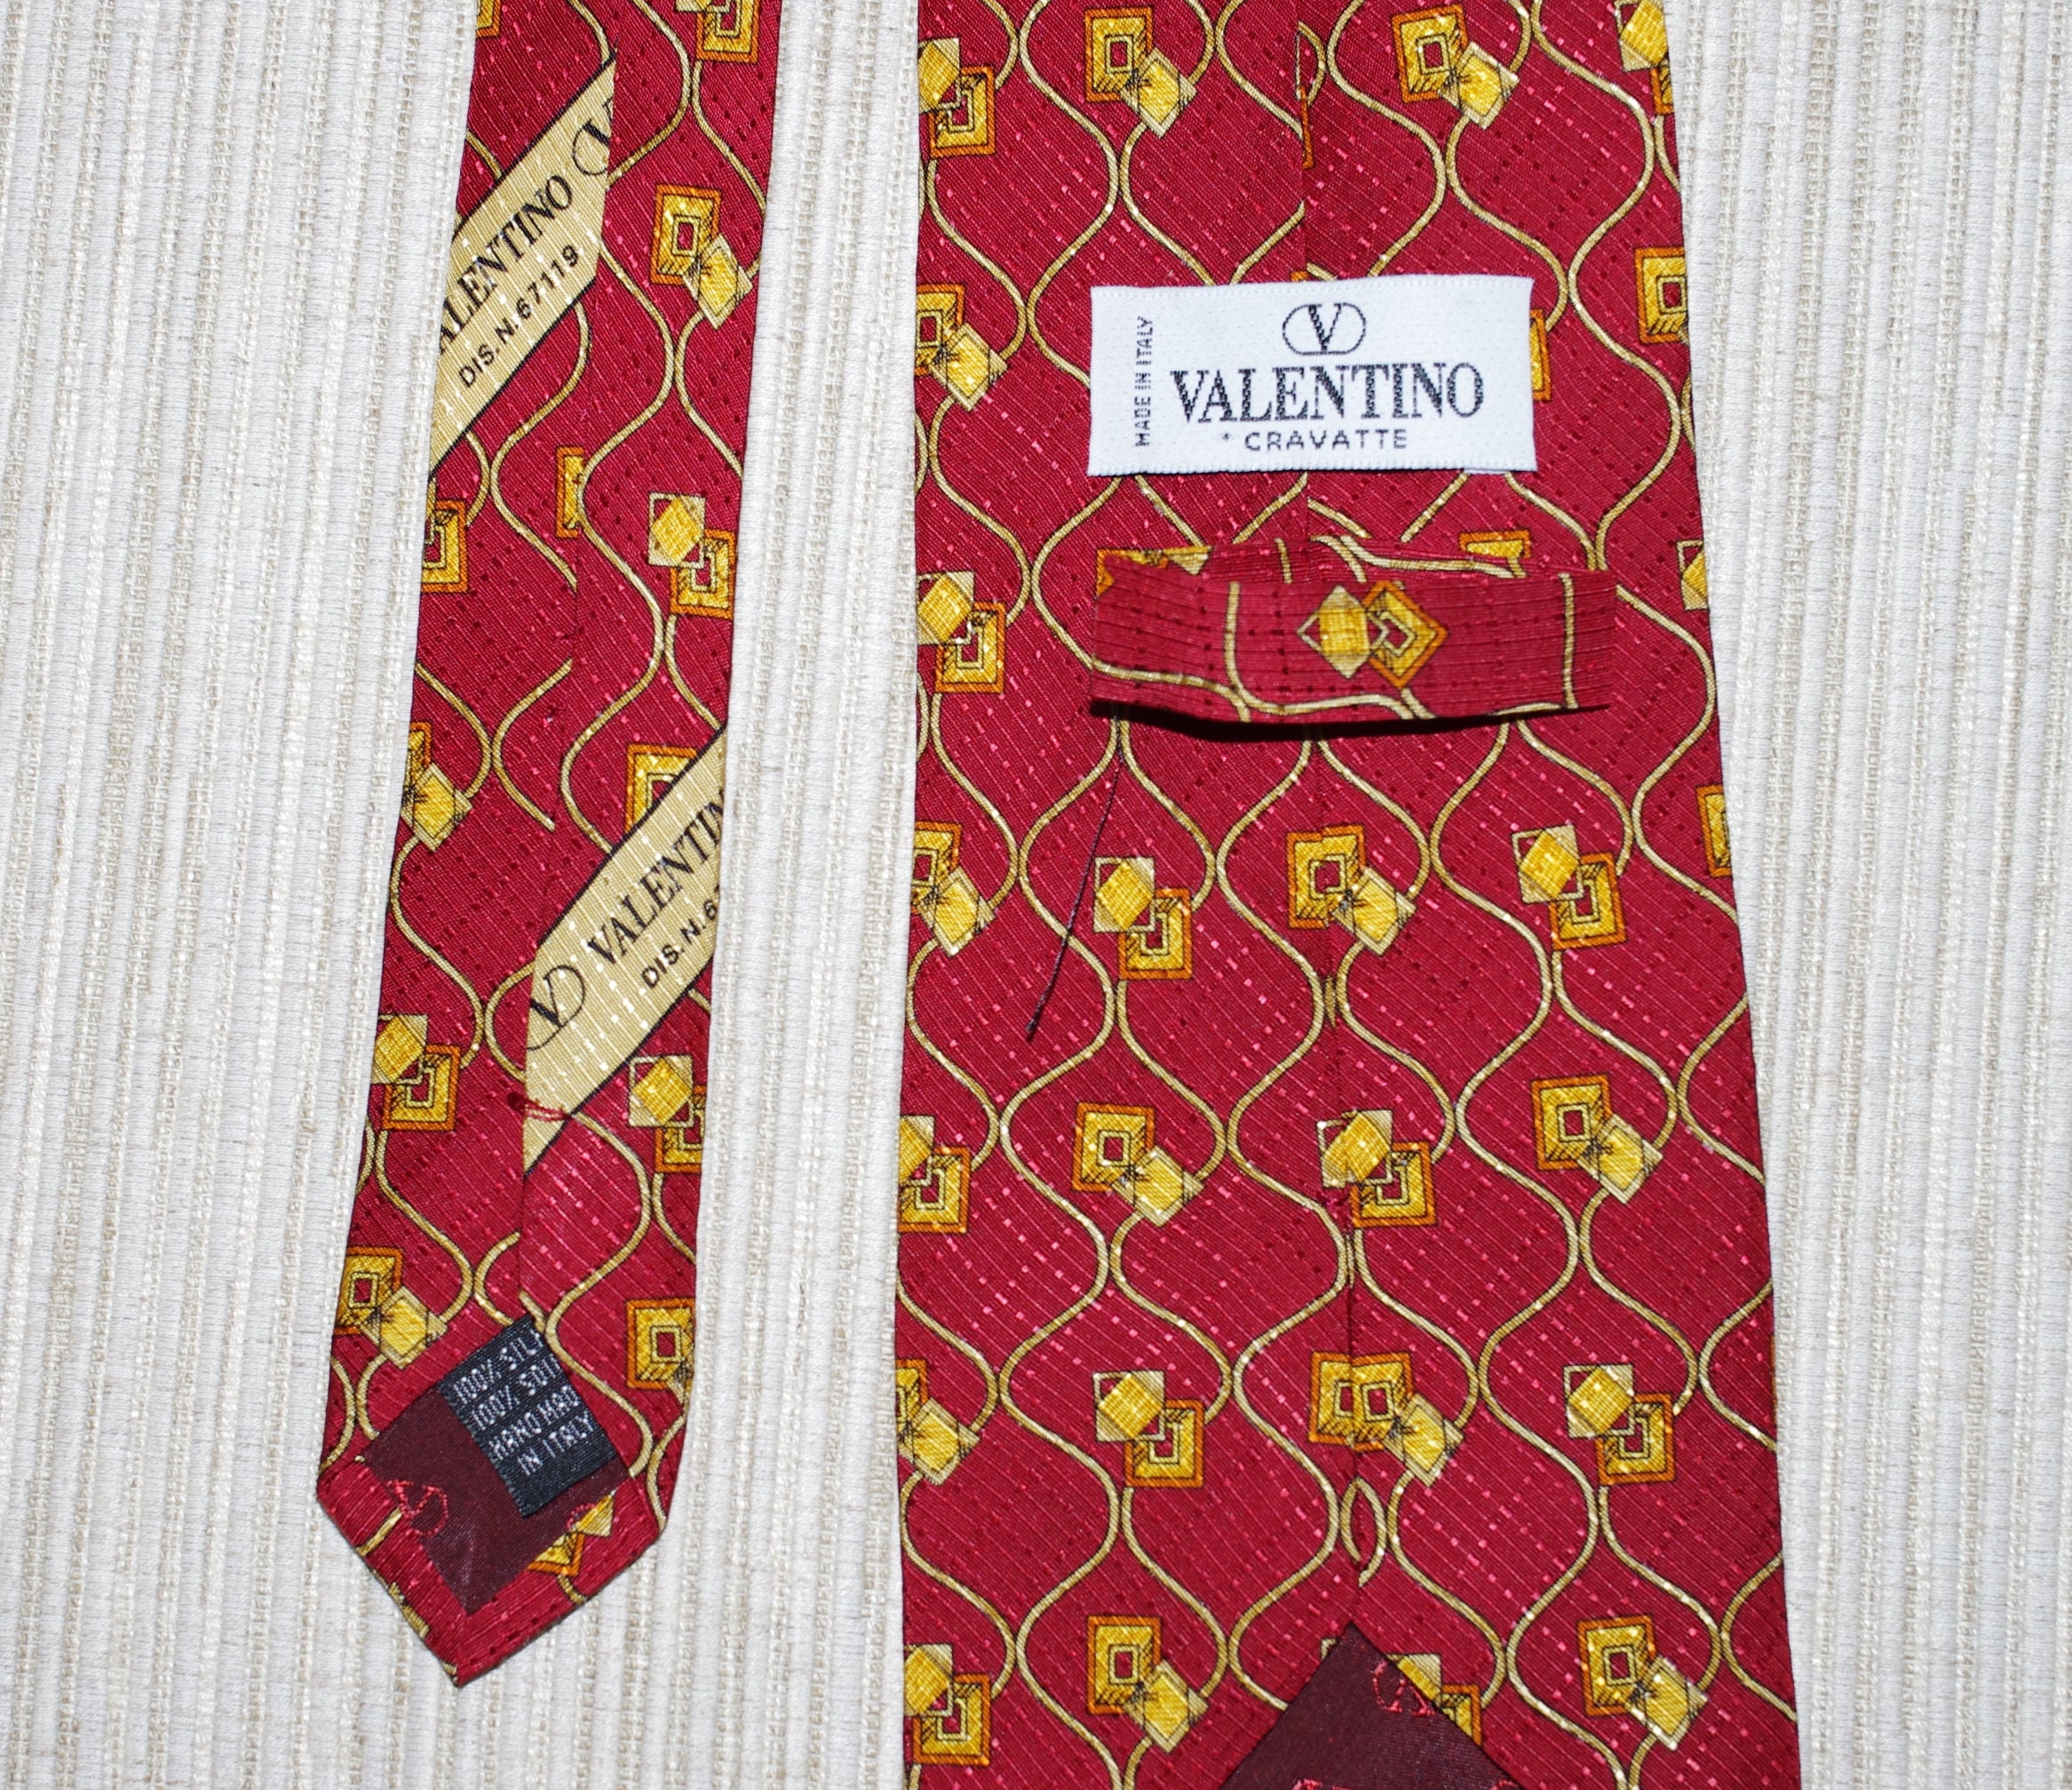 Valentino Cravatte Silk Red Yellow Gold Print Vintage Necktie 56x